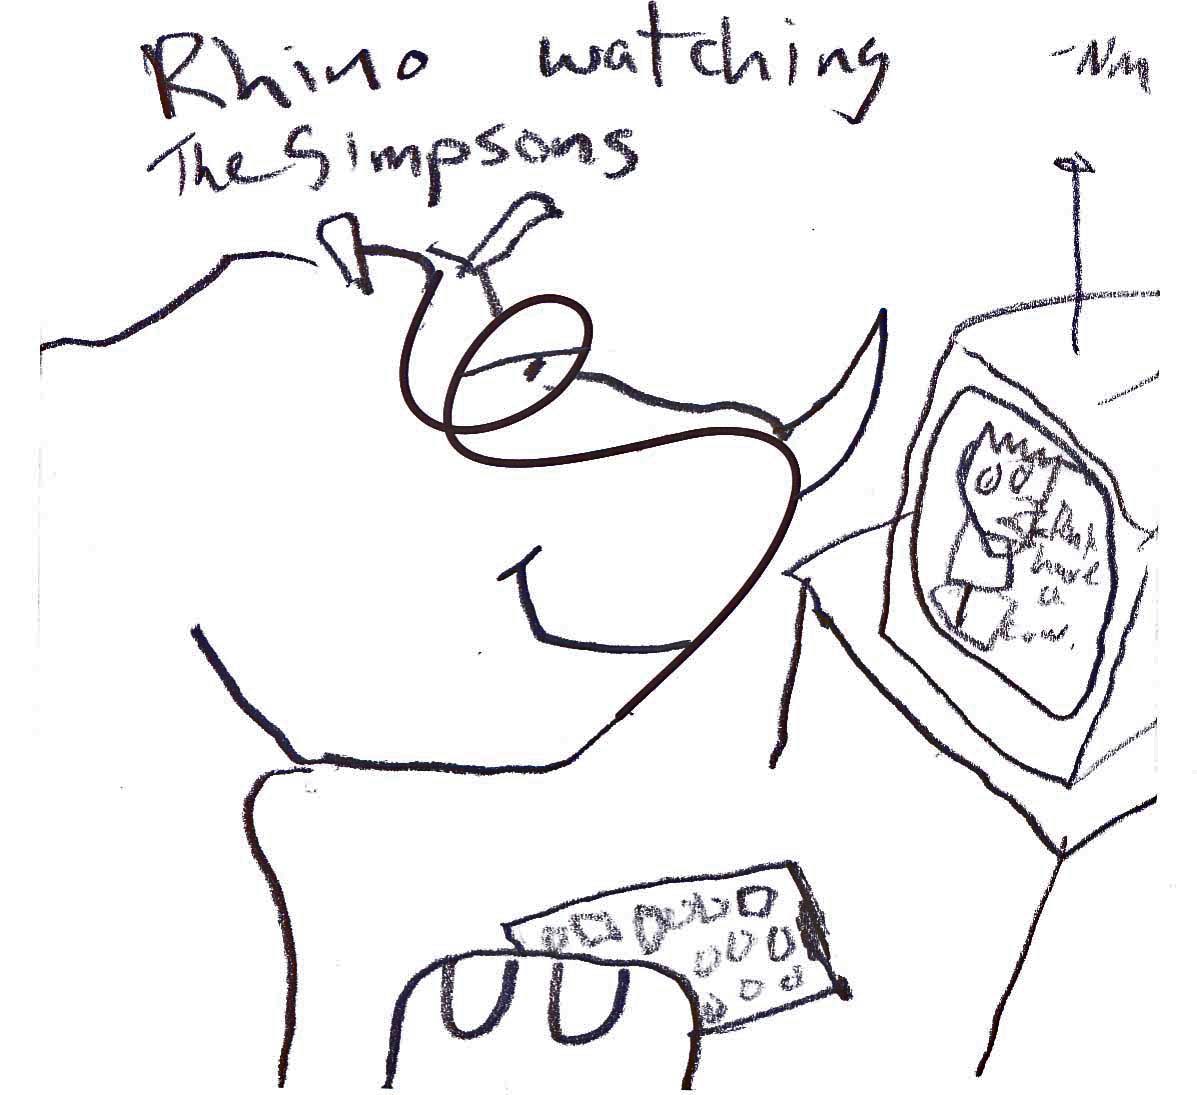 rhino watching the simpsons